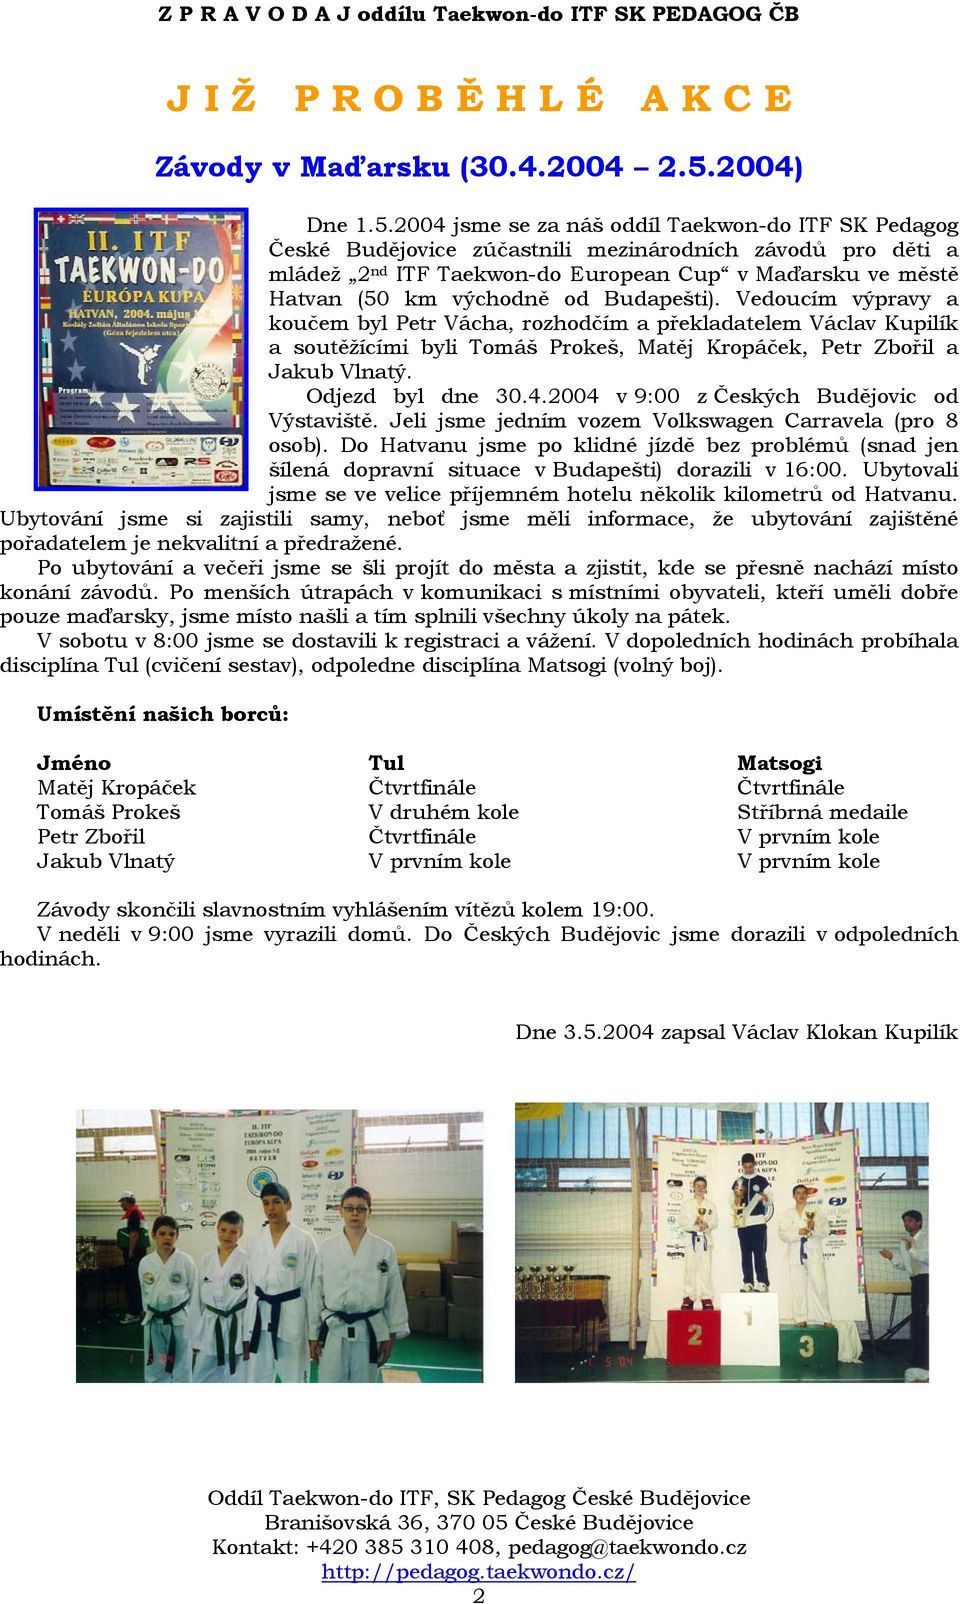 2004 jsme se za náš oddíl Taekwon-do ITF SK Pedagog České Budějovice zúčastnili mezinárodních závodů pro děti a mládež 2 nd ITF Taekwon-do European Cup v Maďarsku ve městě Hatvan (50 km východně od